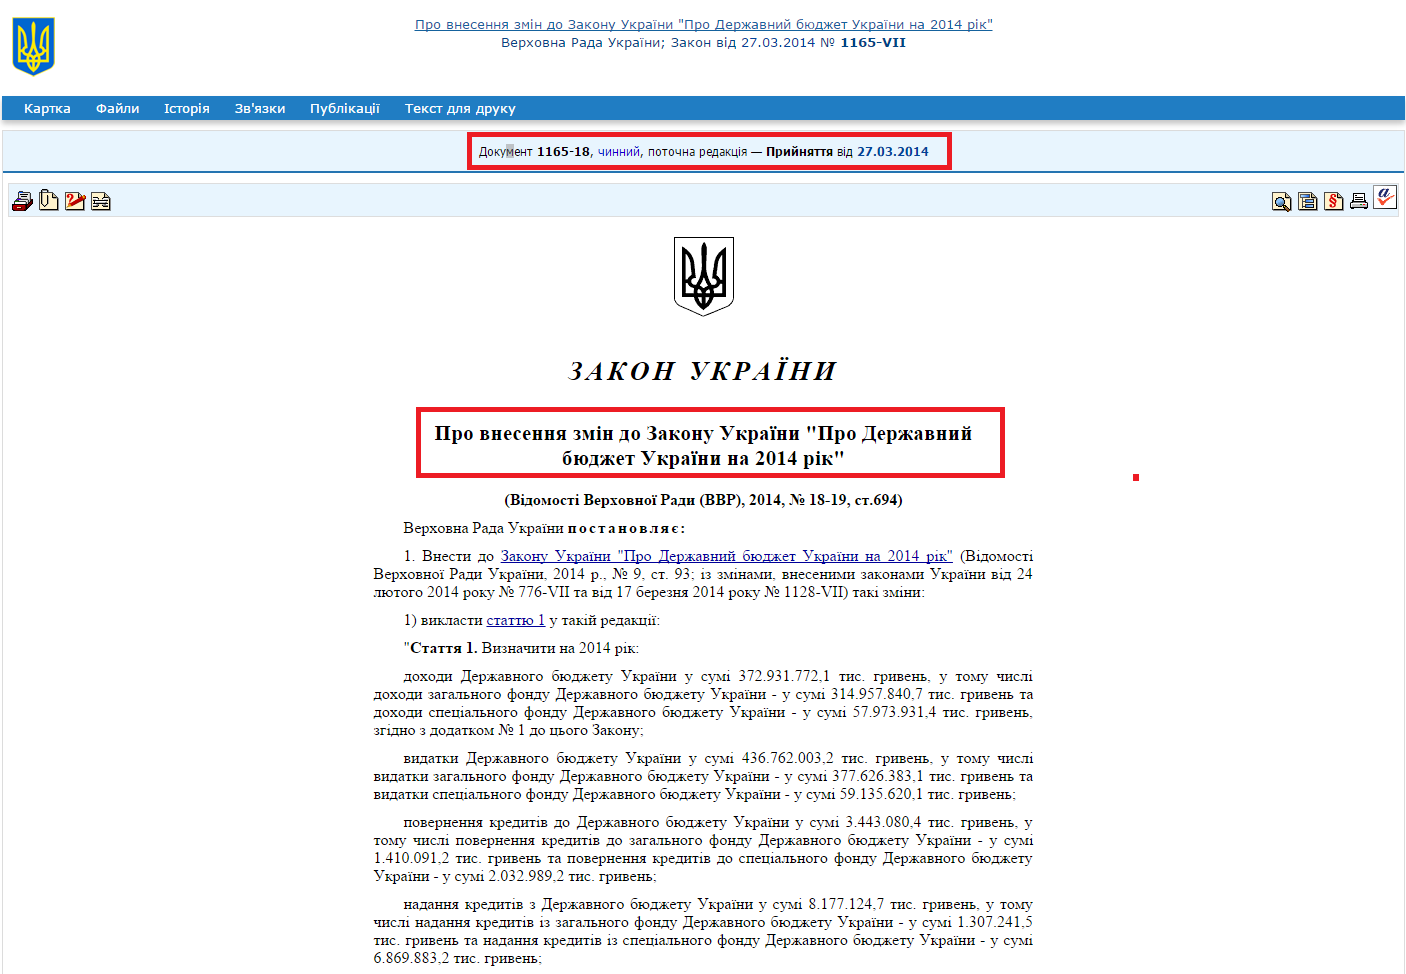 http://zakon4.rada.gov.ua/laws/show/1165-18